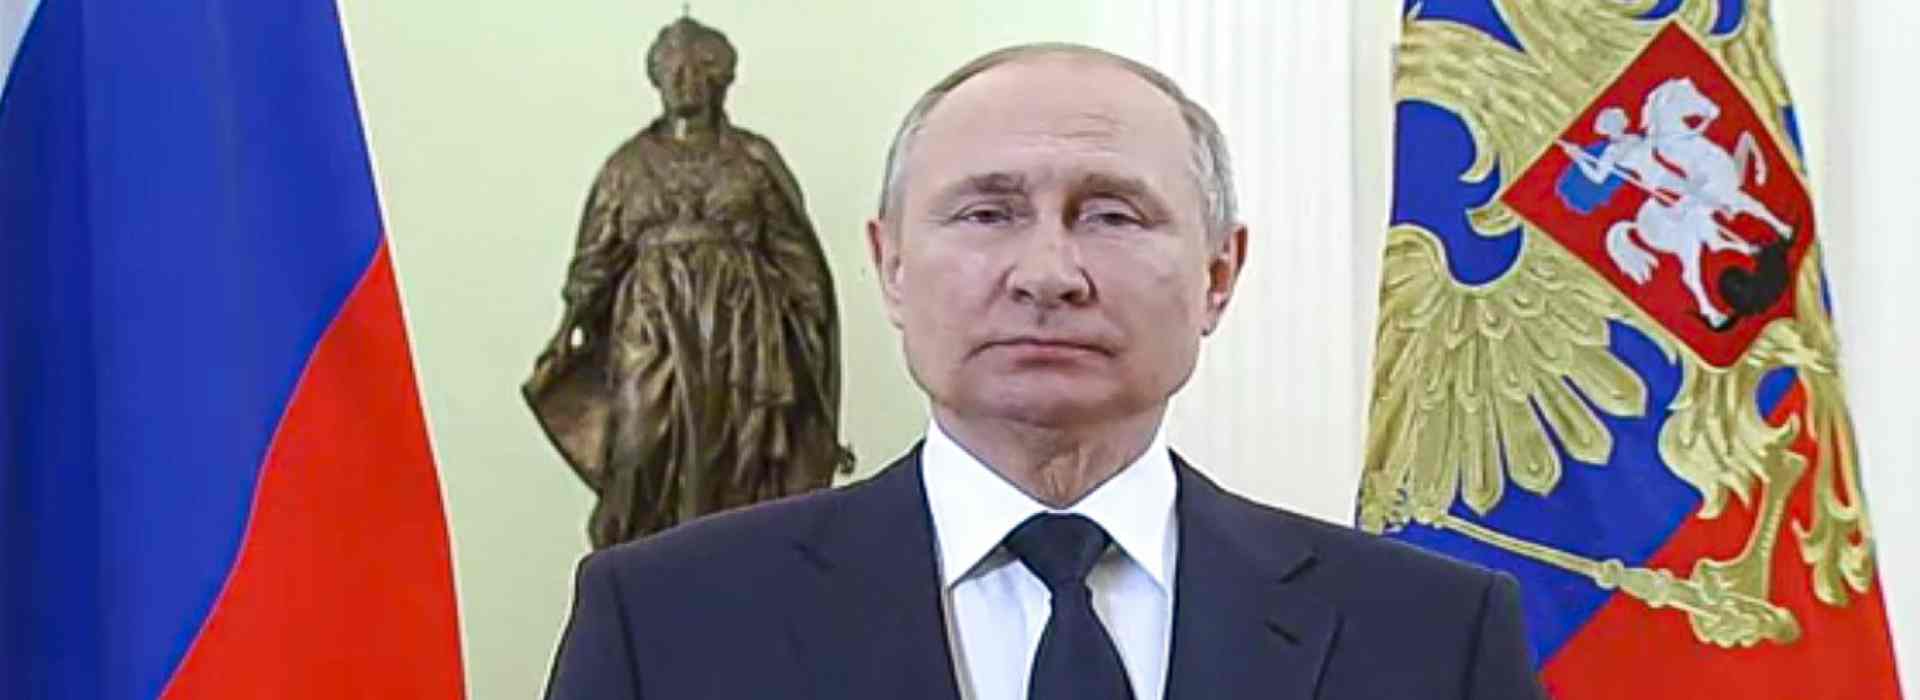 Vladimir Putin, i suoi tesori e amici e amanti collocati nei posti di potere. Ecco i nomi